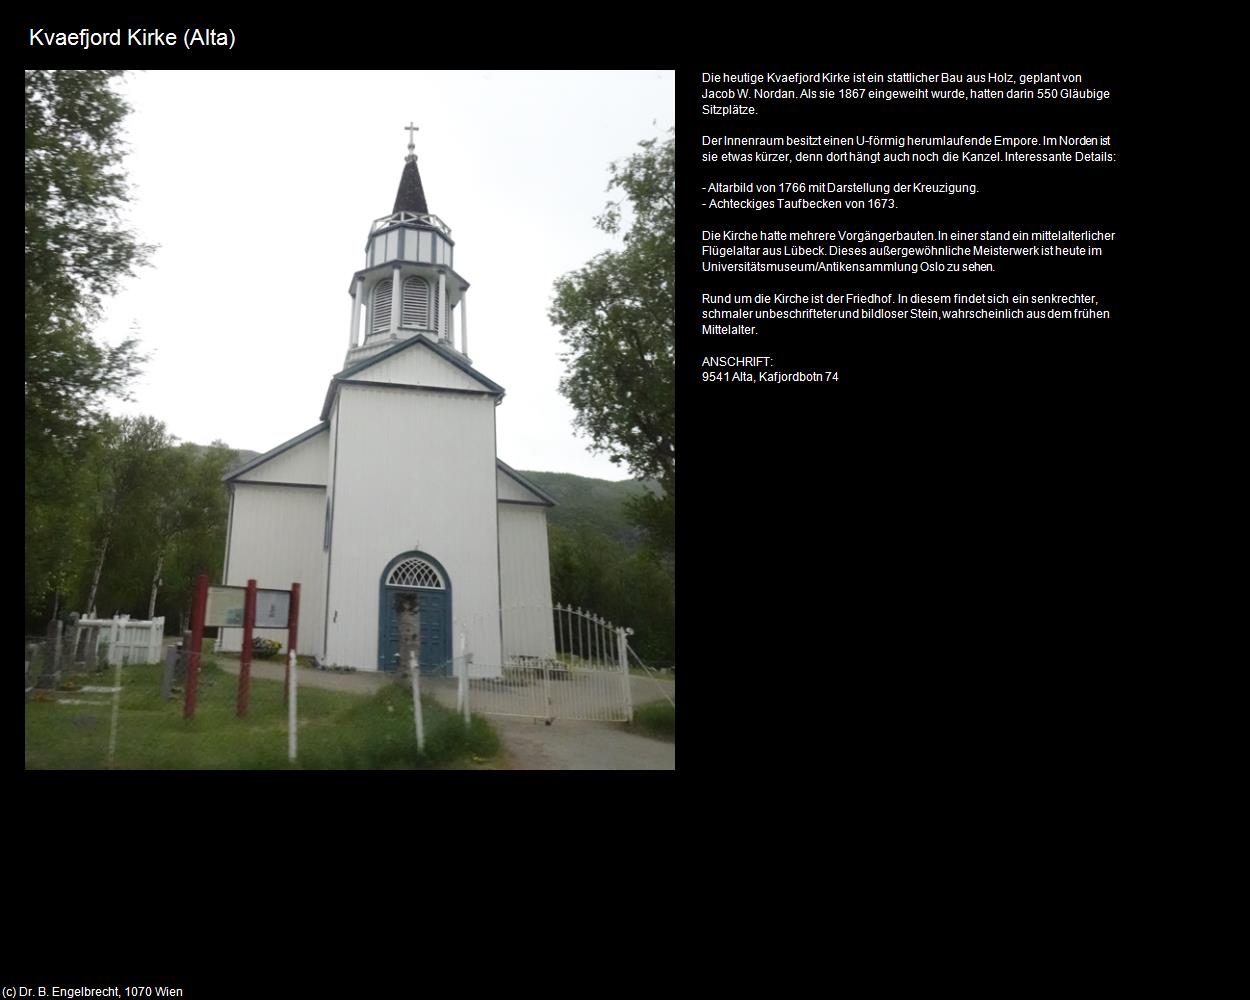 Kvaefjord Kirke (Alta in Norwegen) in Kulturatlas-NORWEGEN